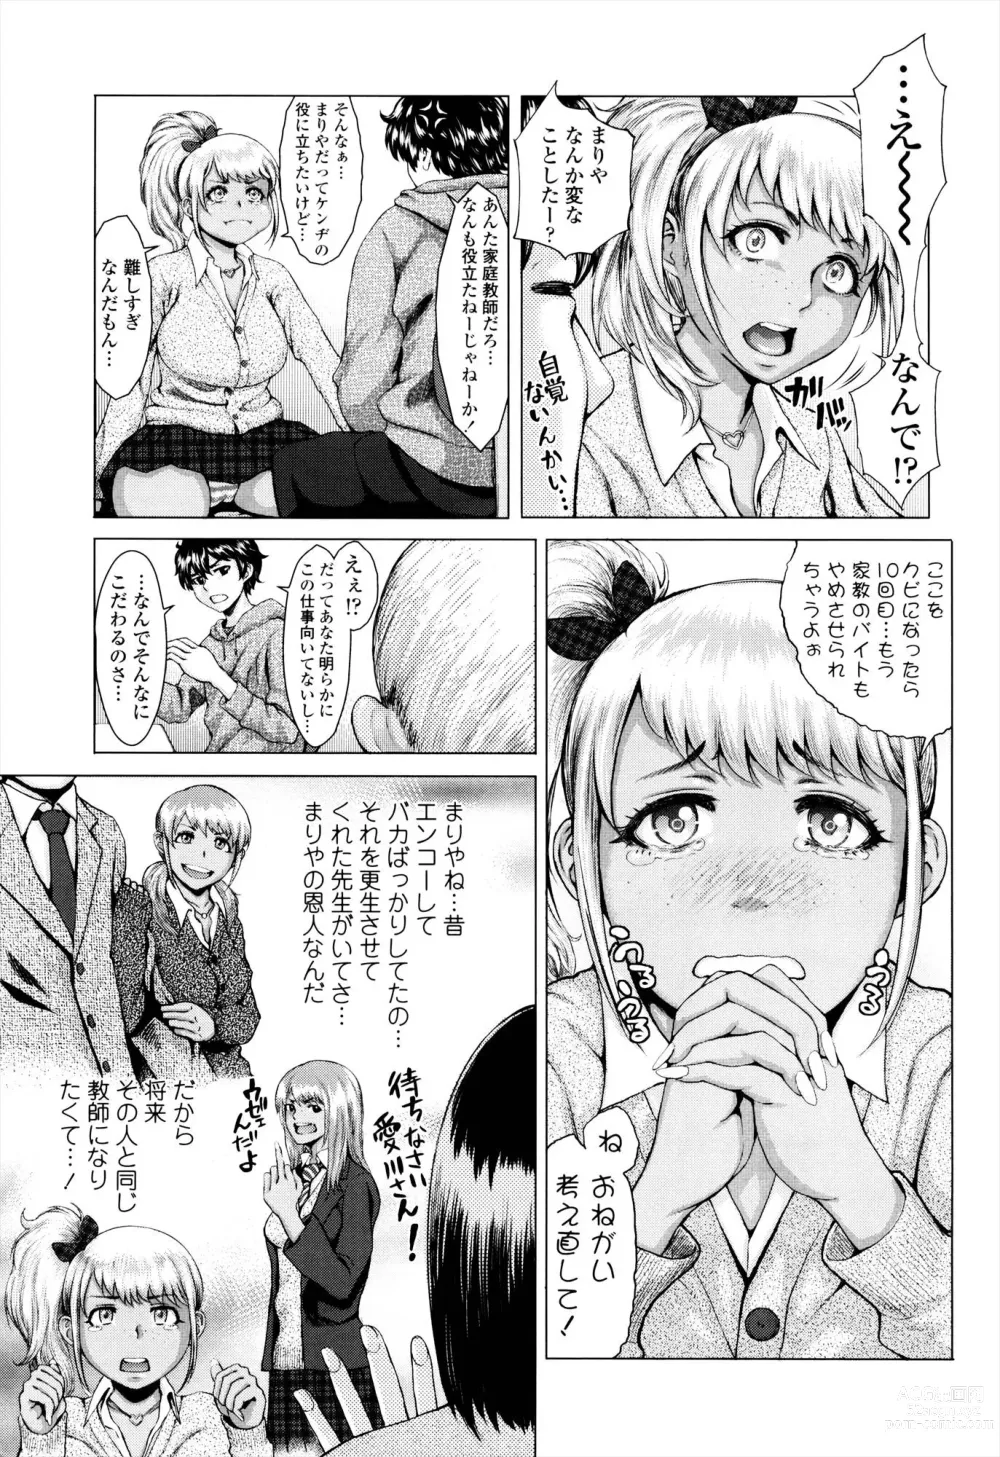 Page 7 of manga Se-Syun Sakari